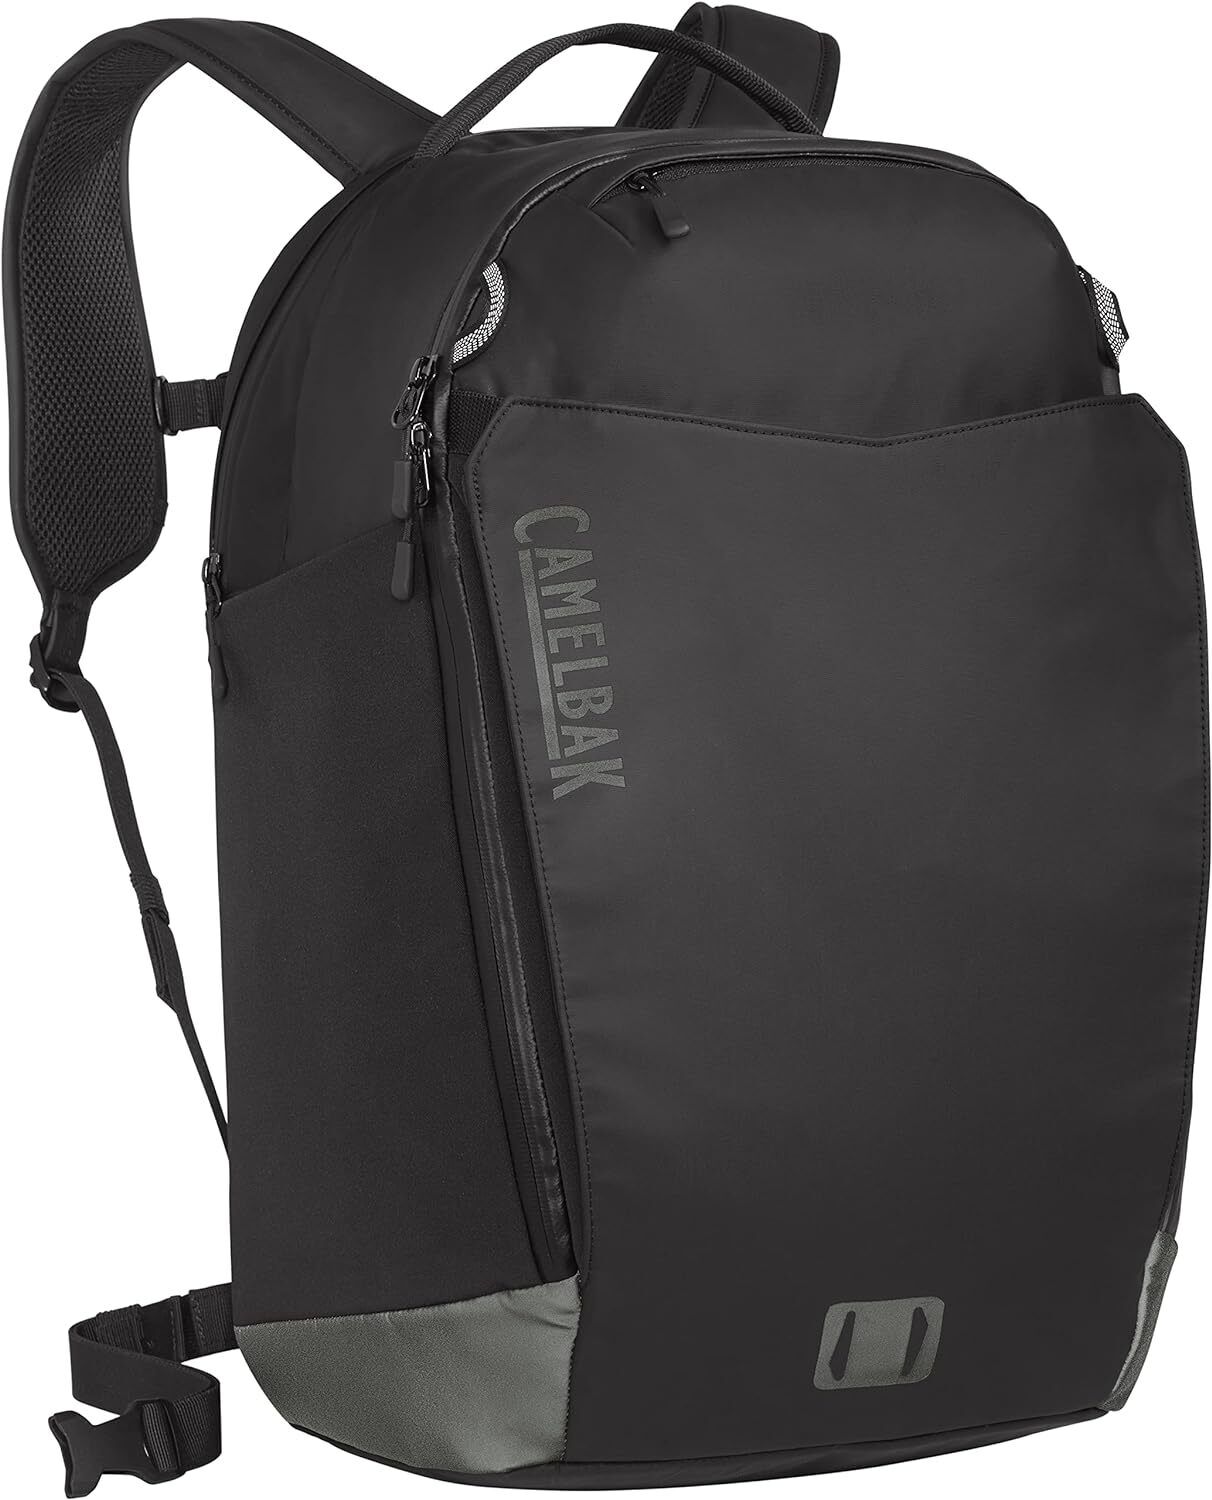 30 Bike Backpack with Weatherproof Laptop Sleeve in Black